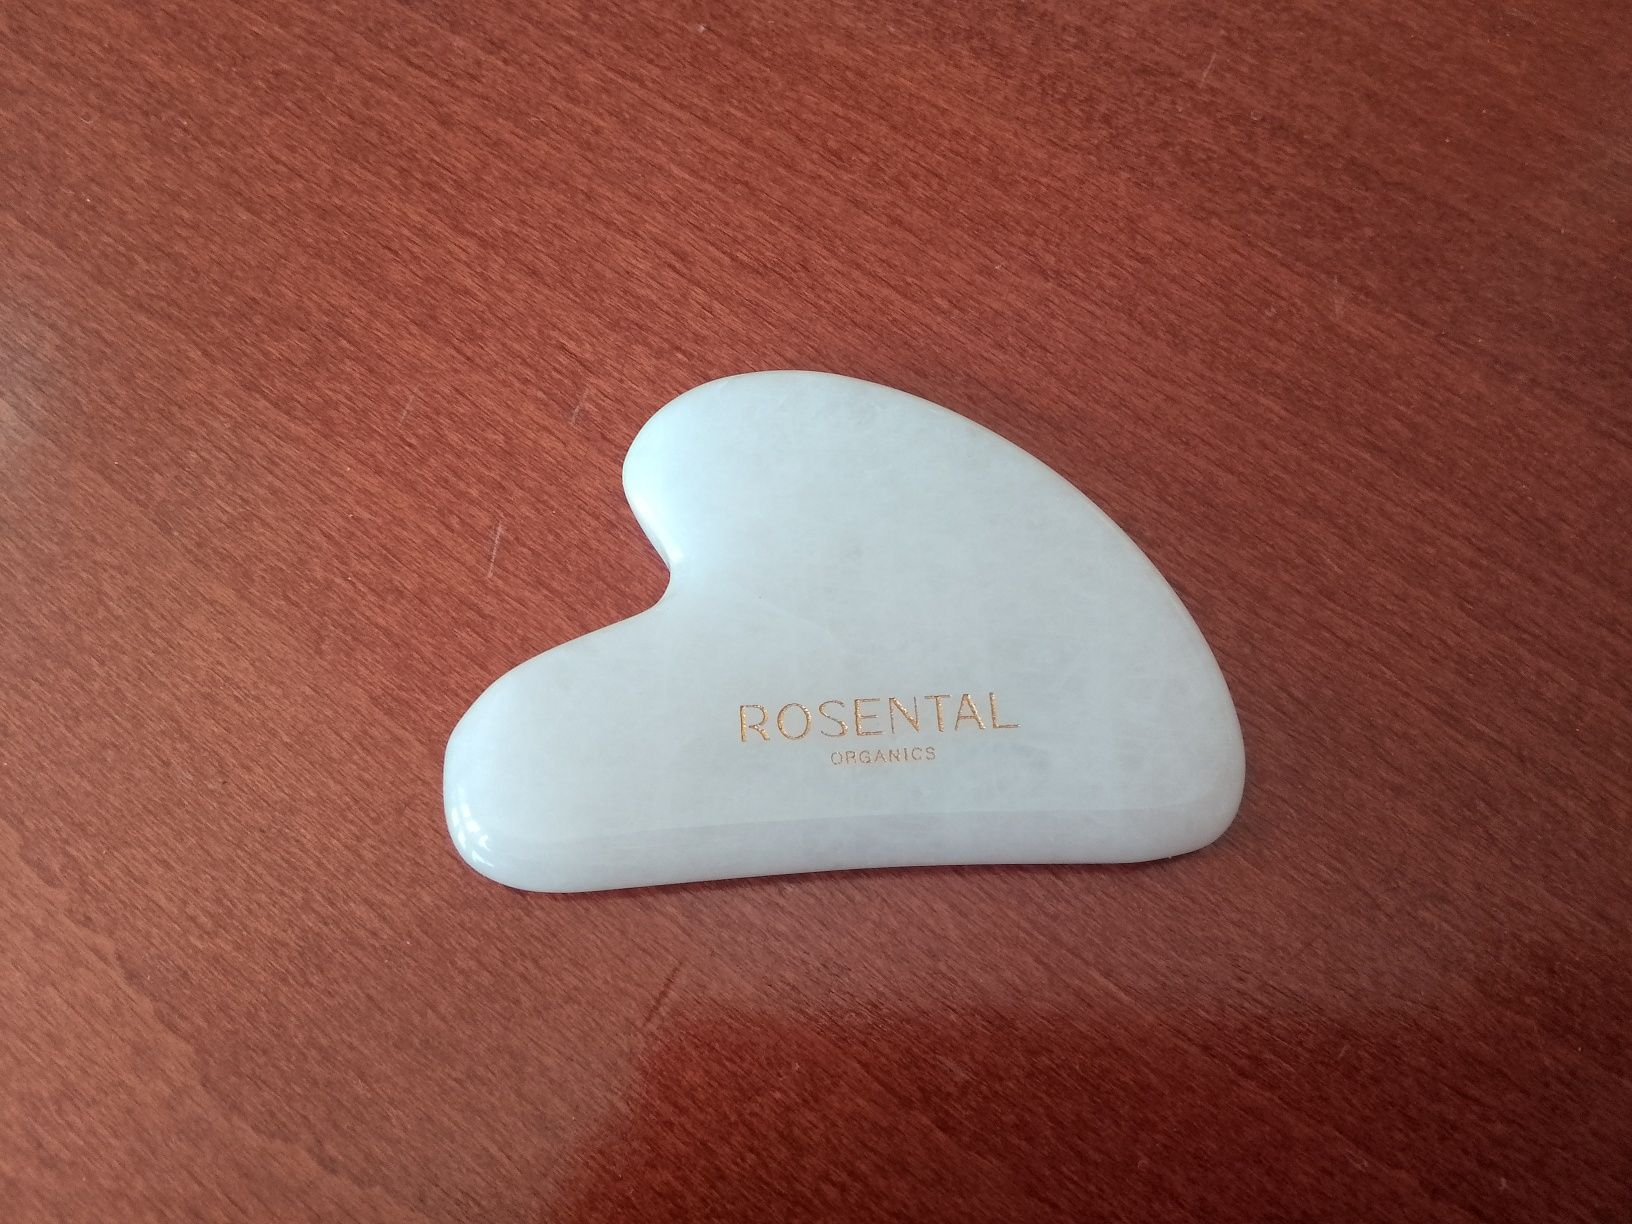 Kamień do masażu Rosental nowy